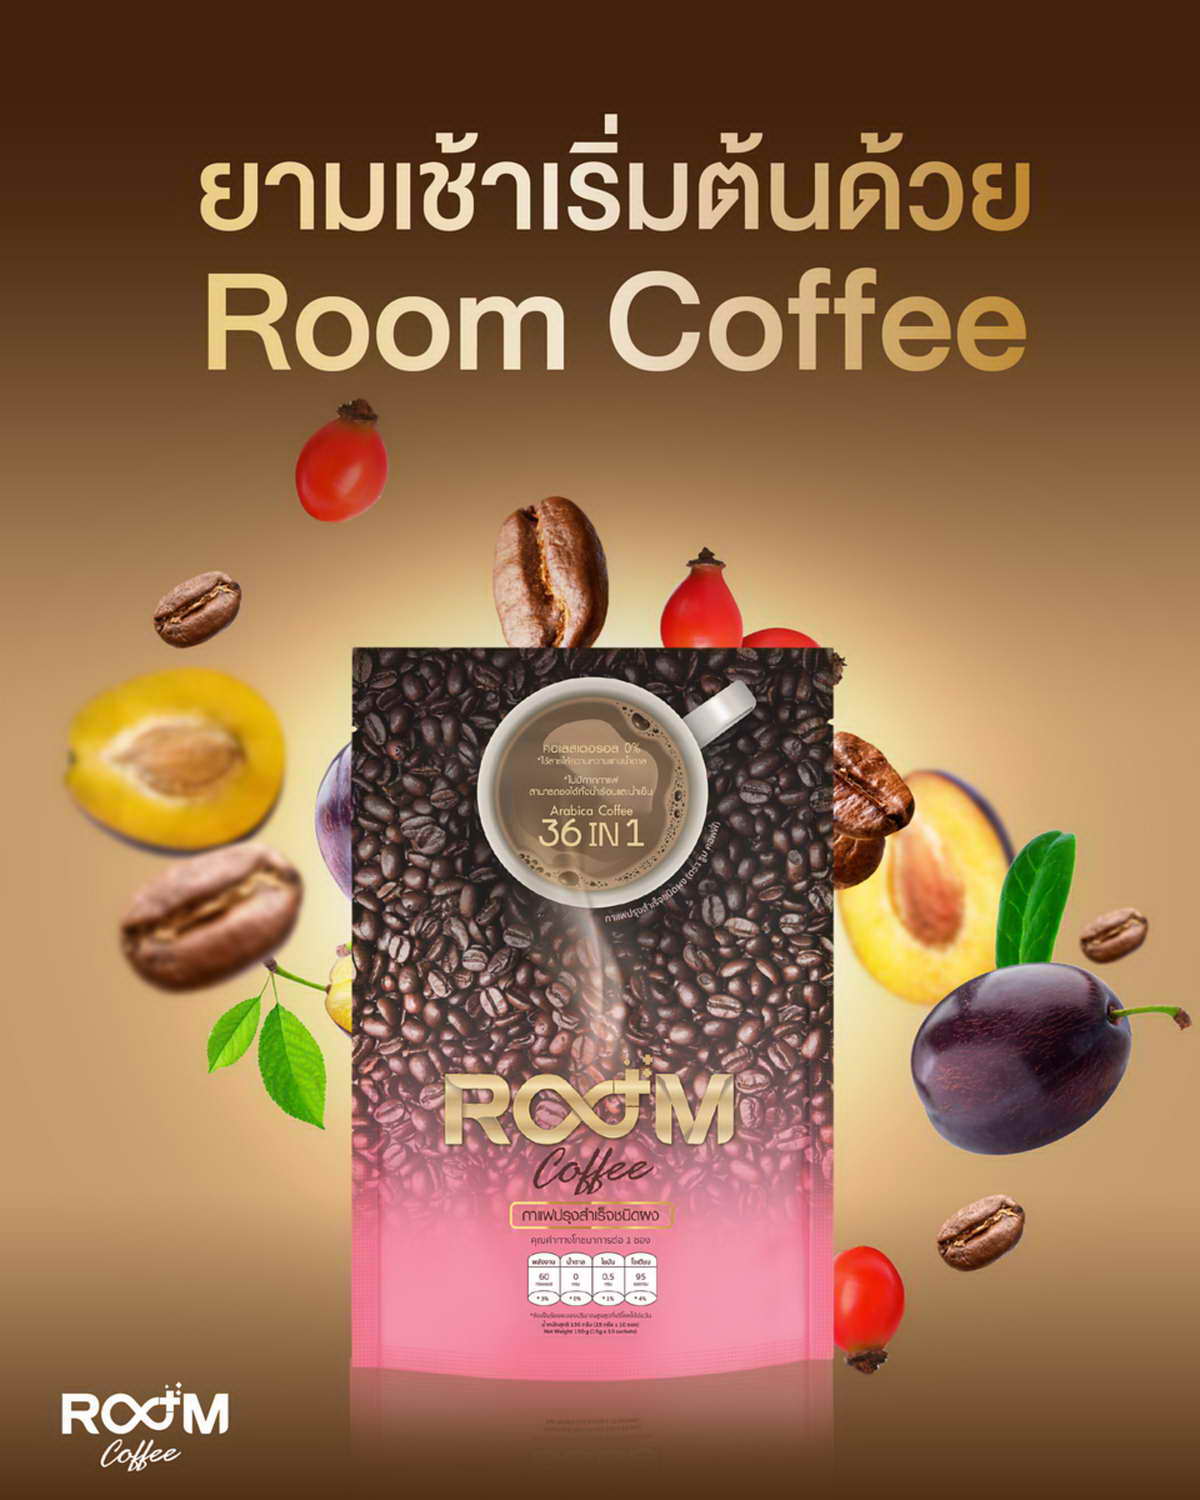 ยามเช้า เริ่มต้นด้วย Room Coffee